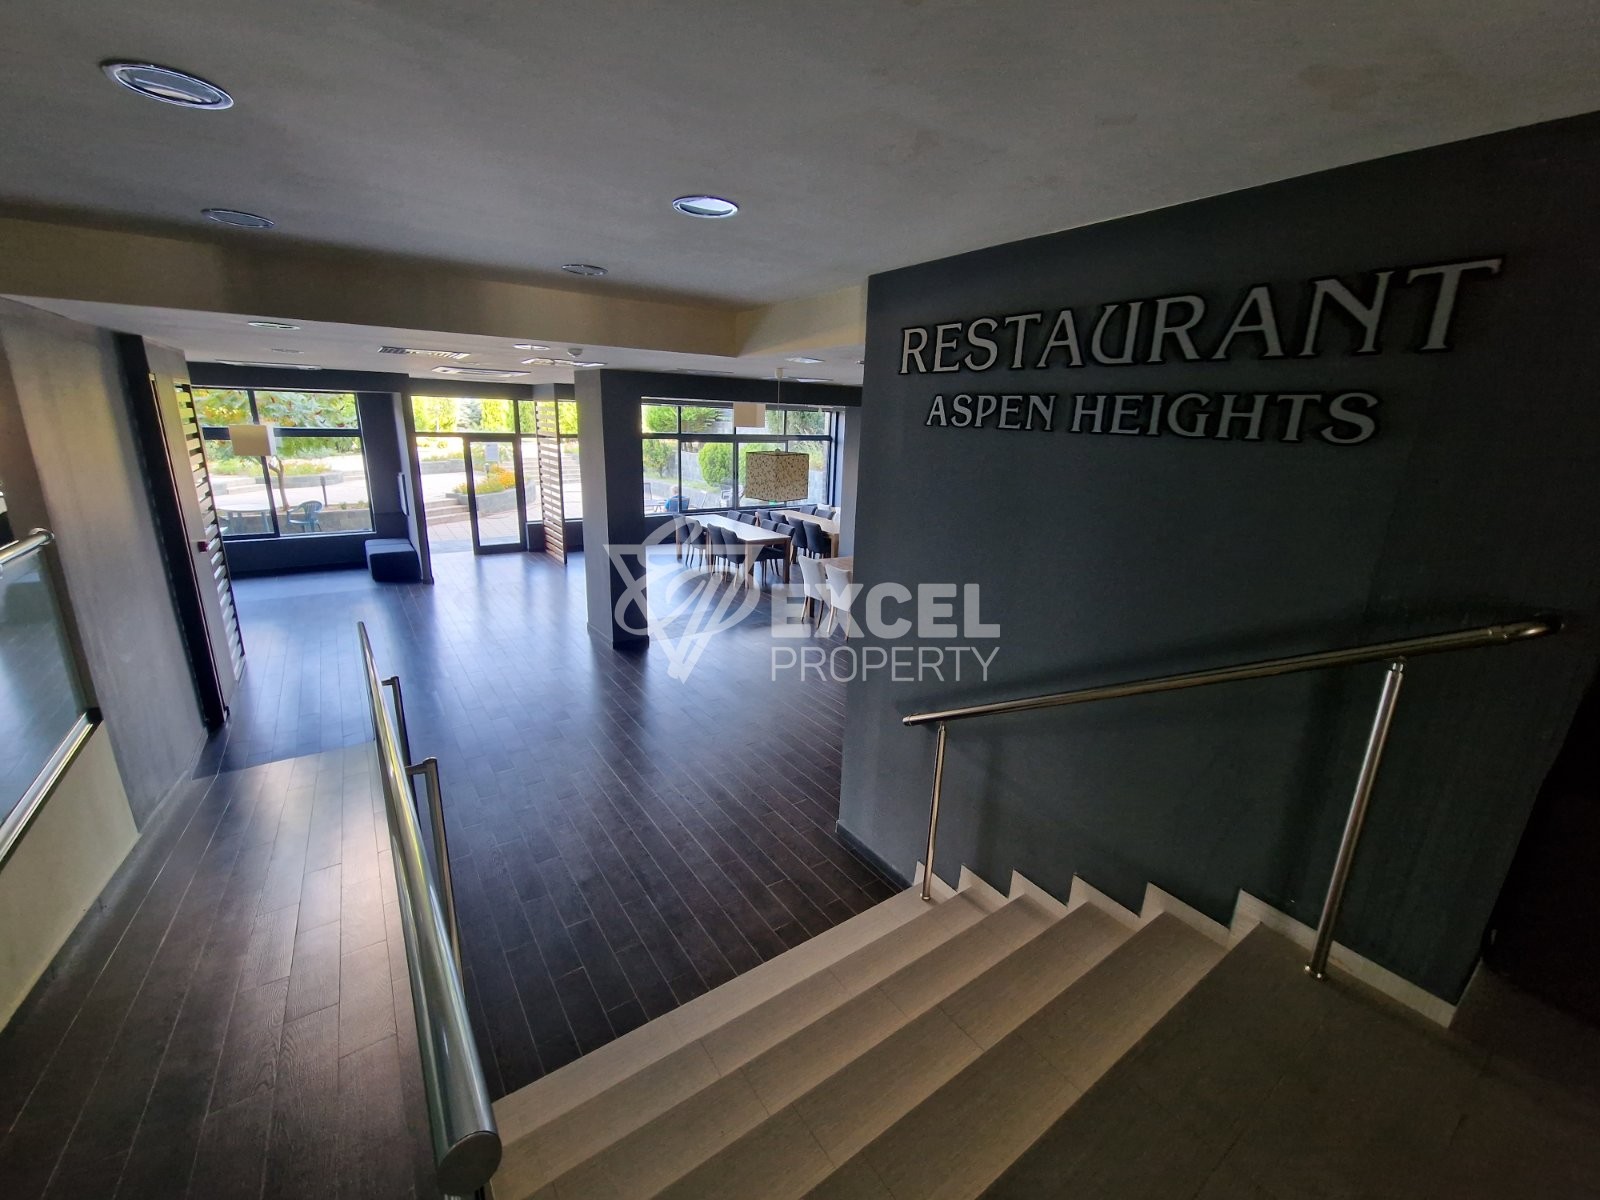 Продается просторная двухкомнатная квартира в комплексе Aspen Heights рядом с гольф-клубом Pirin Golf